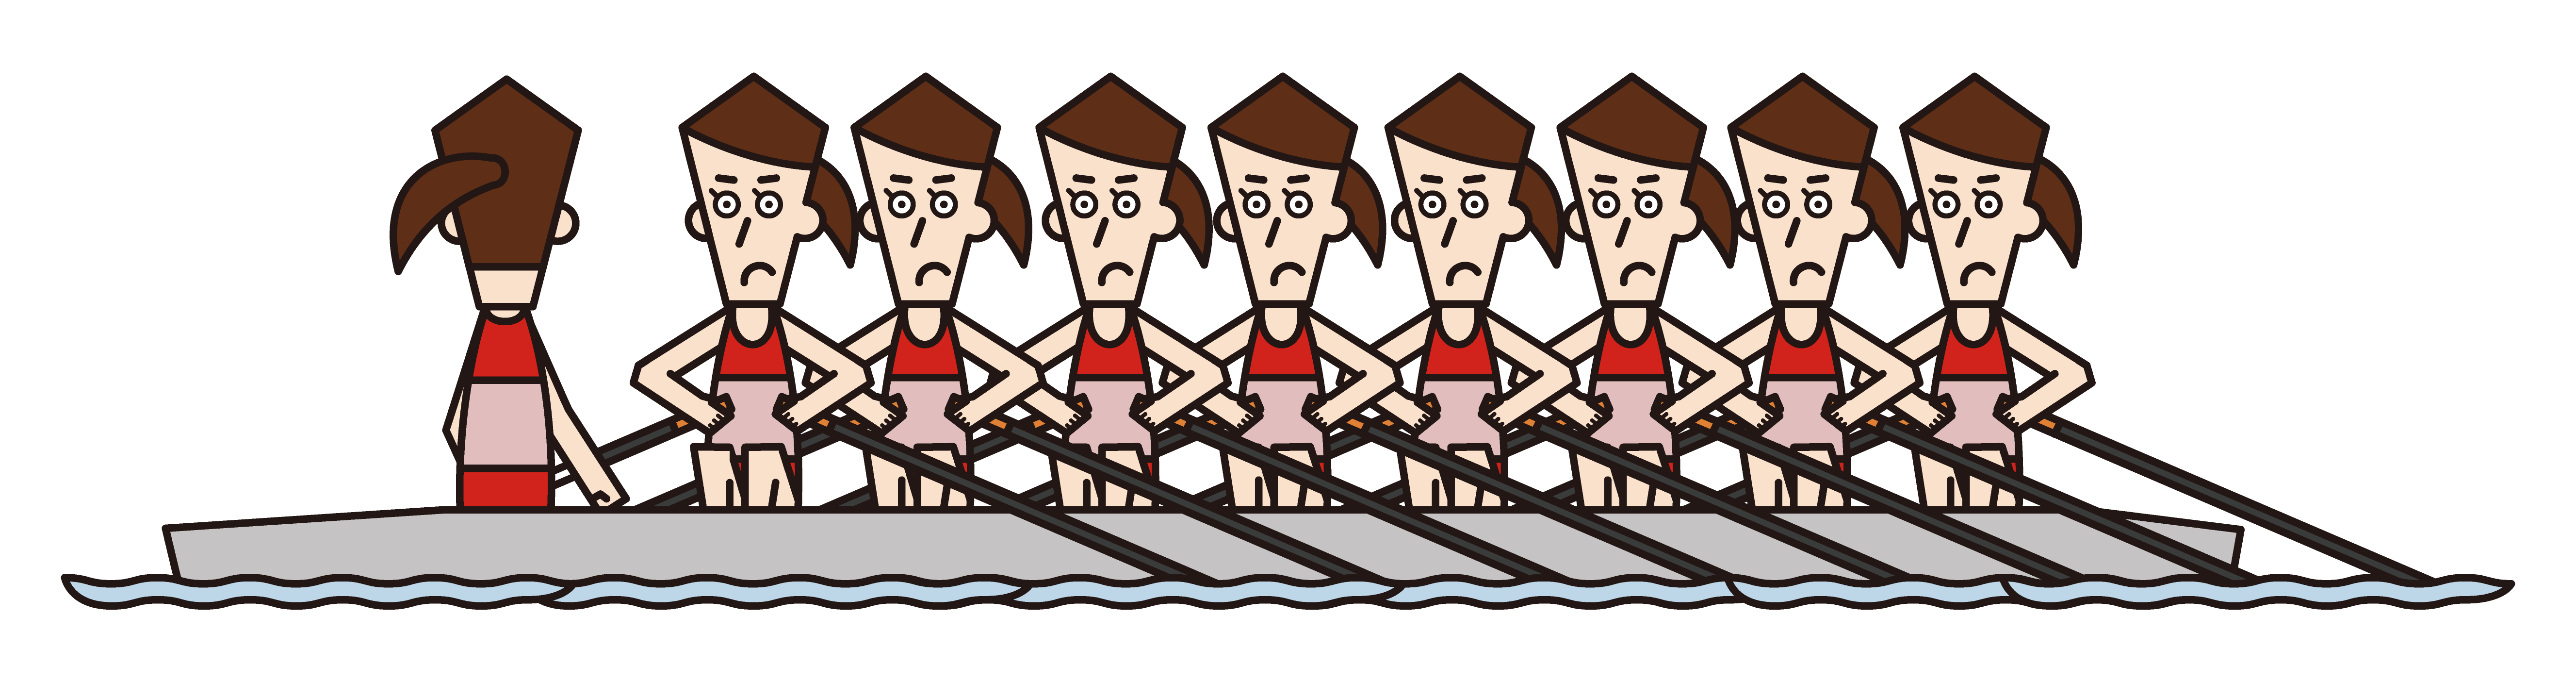 ボート競技（エイト）の選手たち（女性）のイラスト